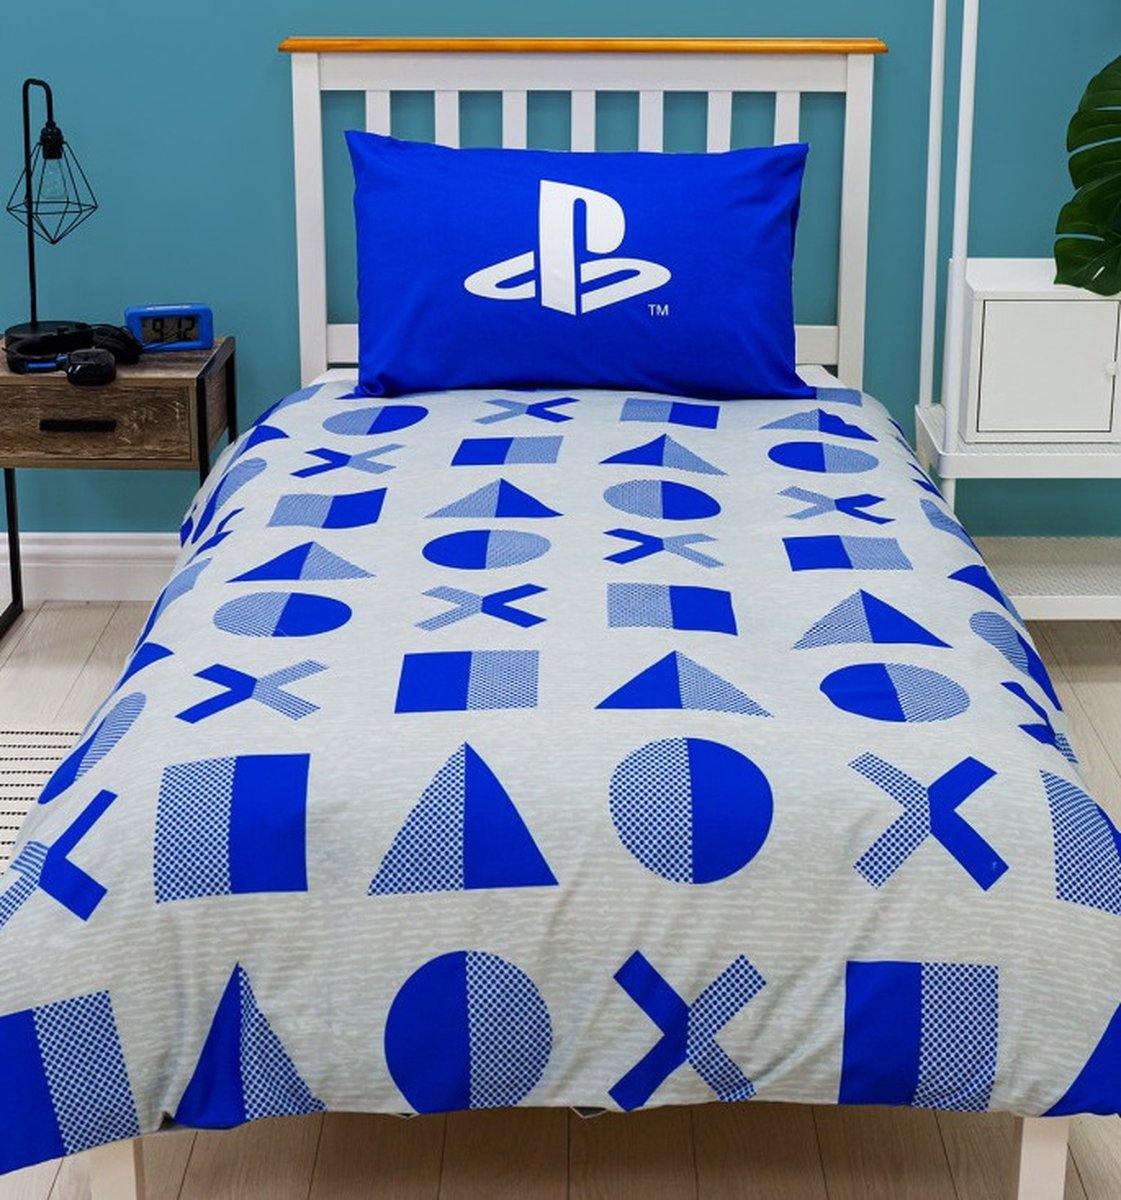 Officieel Playstation logo dekbedovertrek - eenpersoons met 1 kussensloop - blauw/grijs/wit